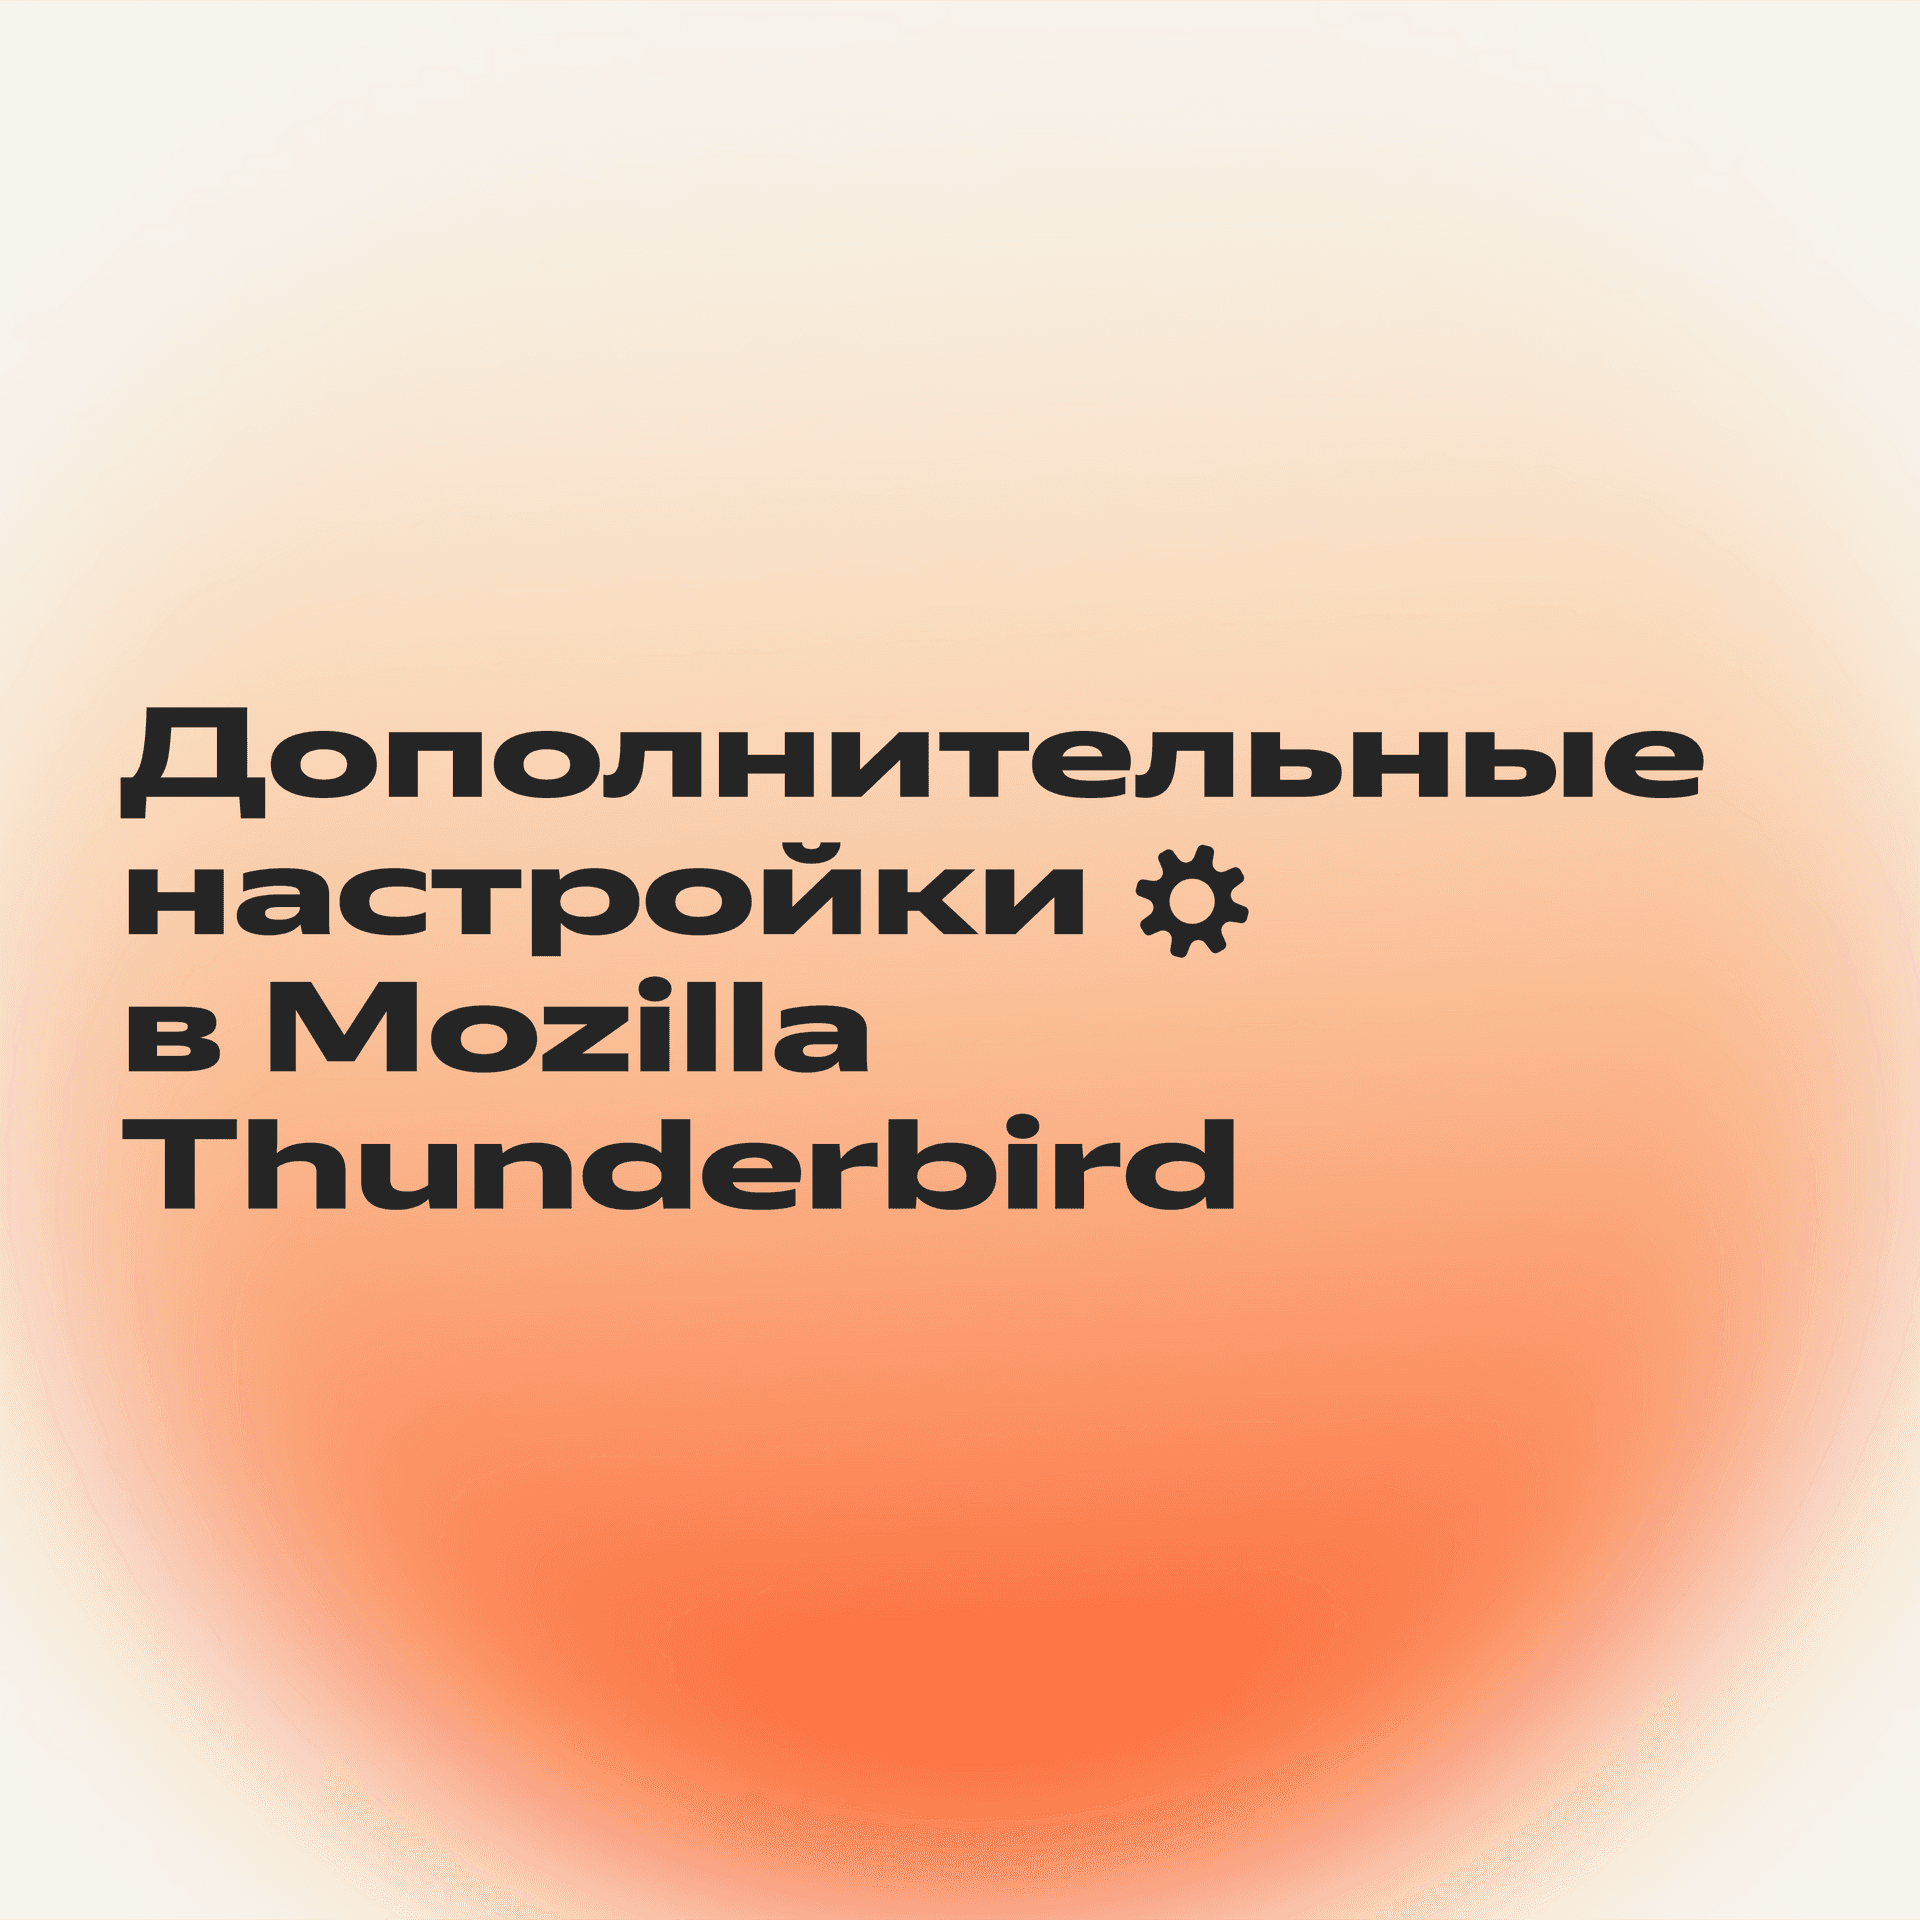 Синхронизировать Почту и Mozilla Thunderbird_4-1